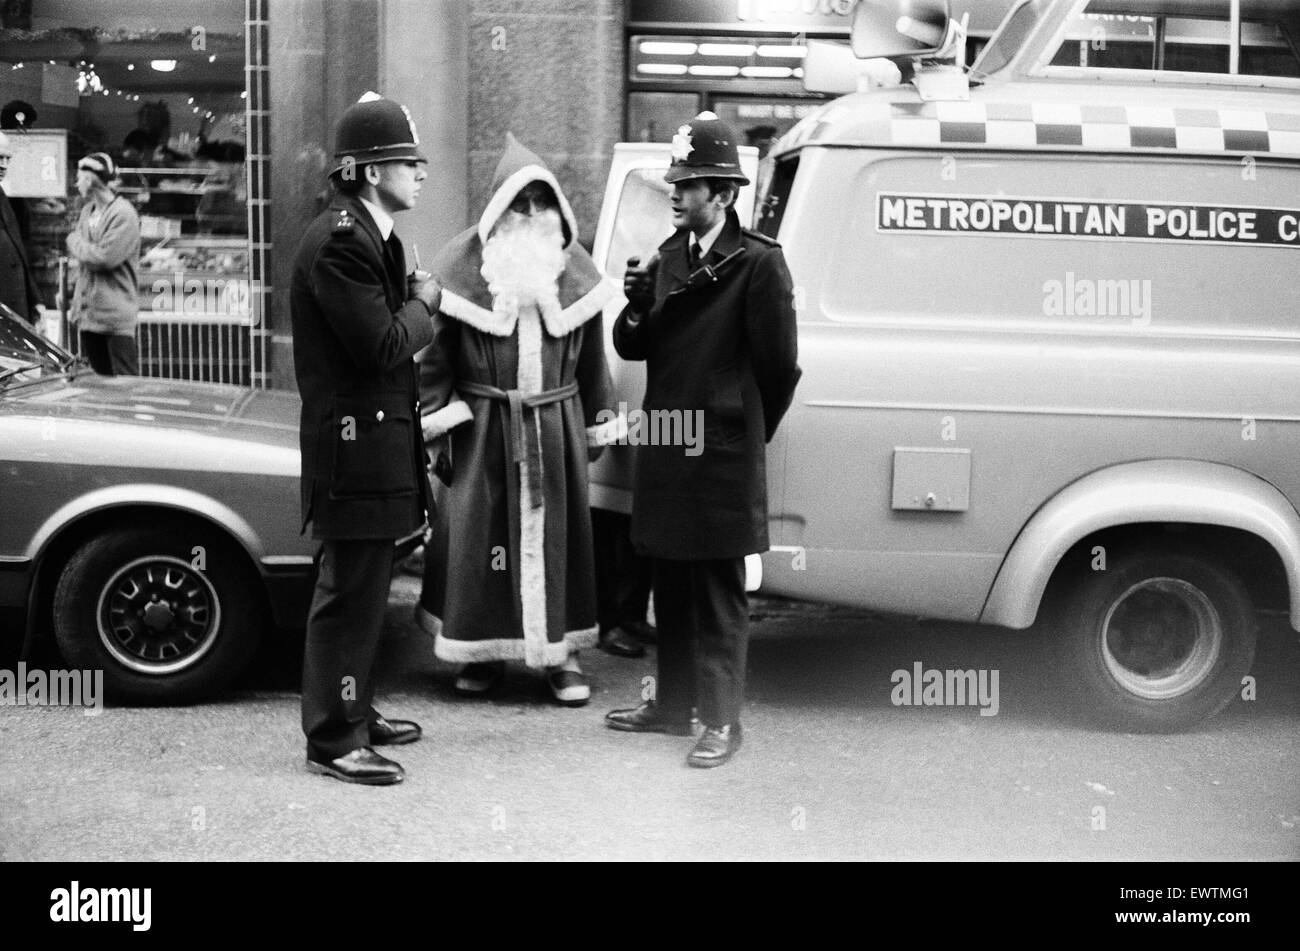 Polizisten sprechen an den Weihnachtsmann außerhalb das Kaufhaus Harrods in London. Santa bot mit Passanten darstellen, während ein Kollege Fotos machten. Polizei verhaftete ihn wegen Behinderung. 19. Dezember 1982. Stockfoto